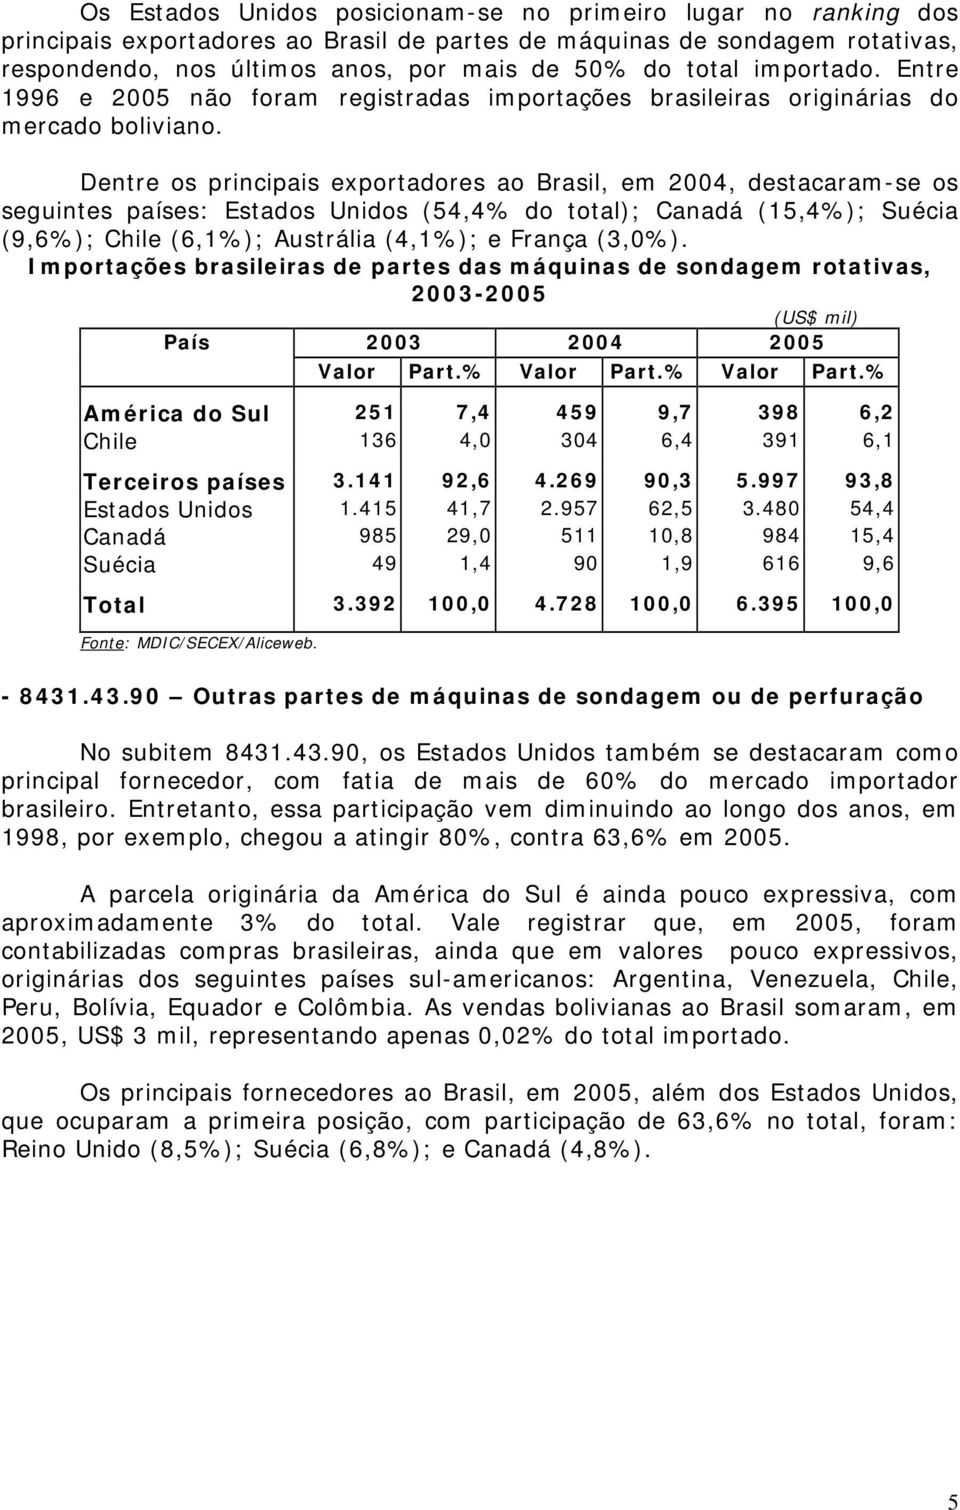 Dentre os principais exportadores ao Brasil, em 2004, destacaram-se os seguintes países: Estados Unidos (54,4% do total); Canadá (15,4%); Suécia (9,6%); Chile (6,1%); Austrália (4,1%); e França